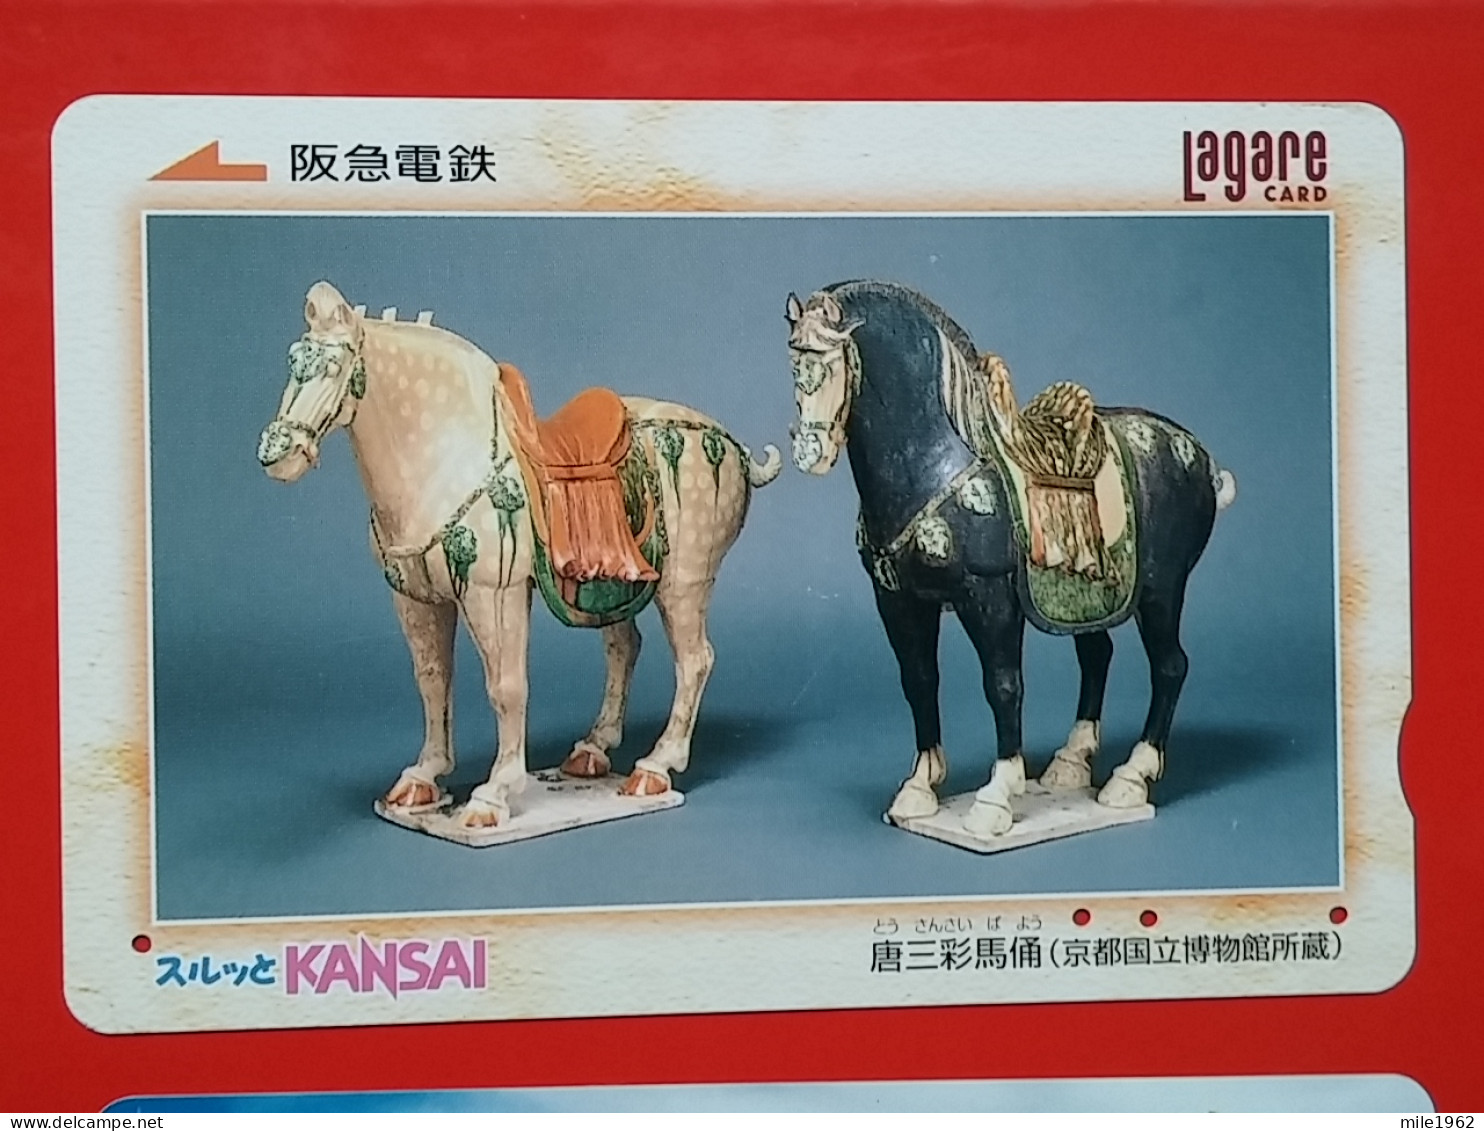 T-203 - JAPAN -JAPON, NIPON, Carte Prepayee  ANIMAL, HORSE, CHEVAL - Pferde